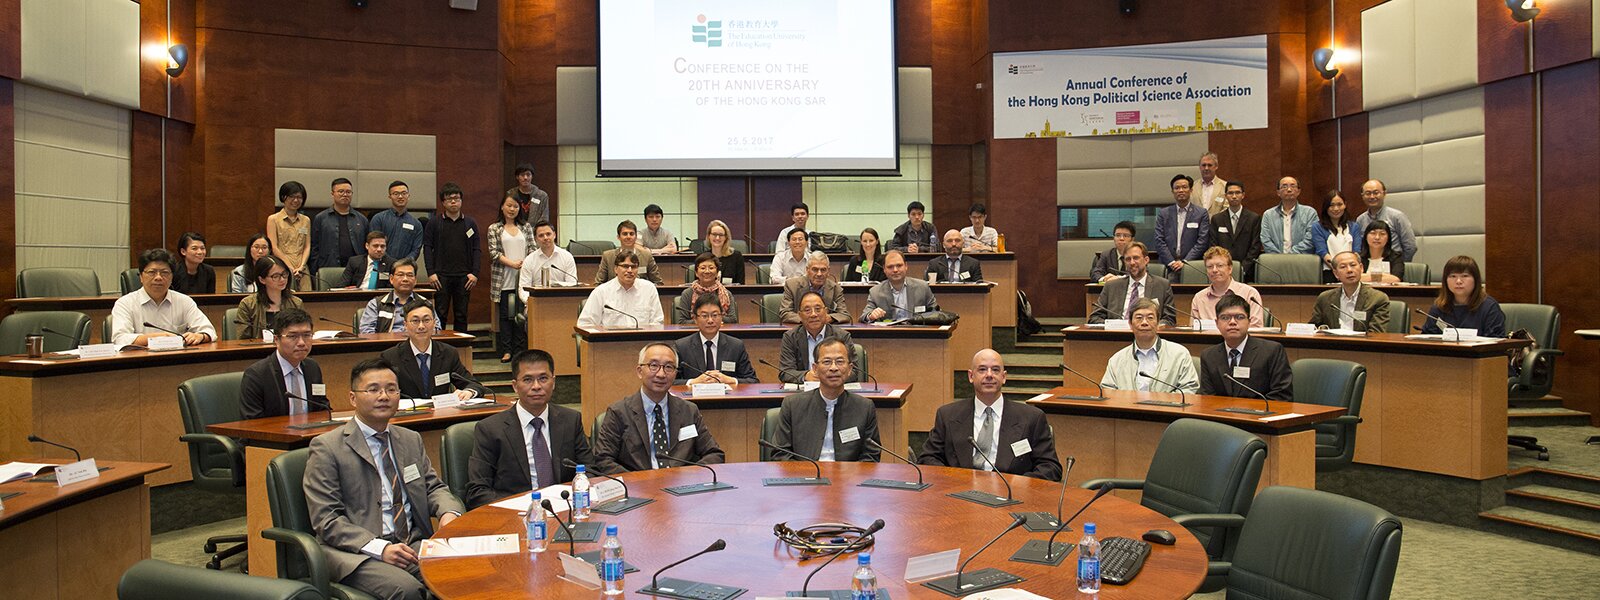 教大举行「香港回归20周年学术会议」暨「香港政治科学学会2017周年会议」